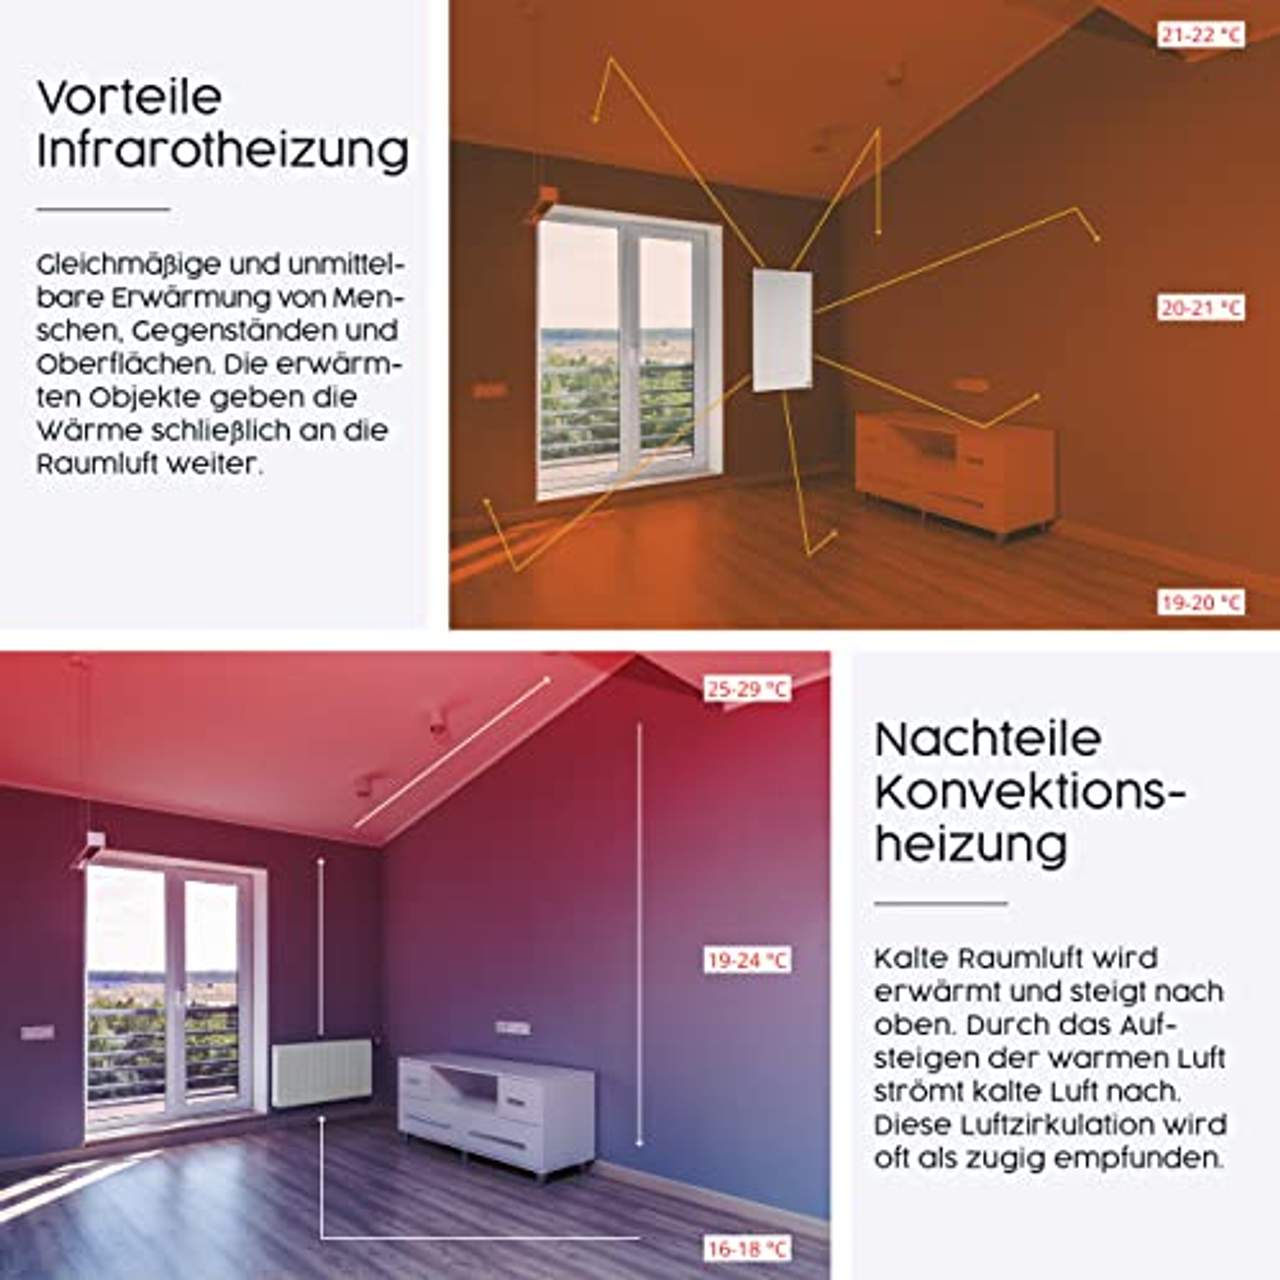 Könighaus Fern Infrarotheizung Bildheizung in HD Qualität 300W